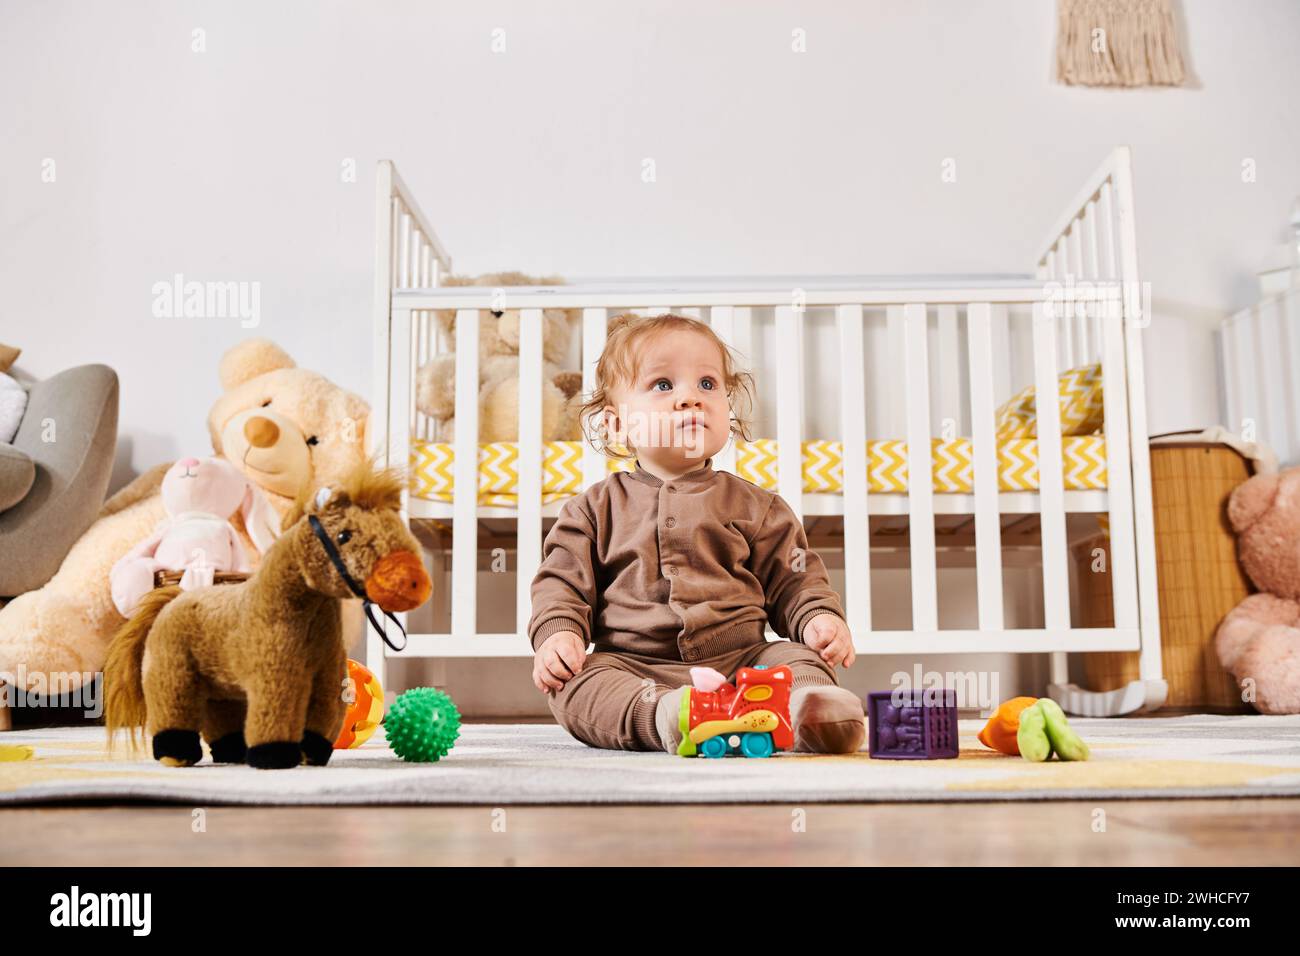 Kleiner unschuldiger Junge, der auf dem Boden neben dem Kinderbett und den Kuschelspielzeugen im gemütlichen Kinderzimmer sitzt, glückliche Babynahrung Stockfoto